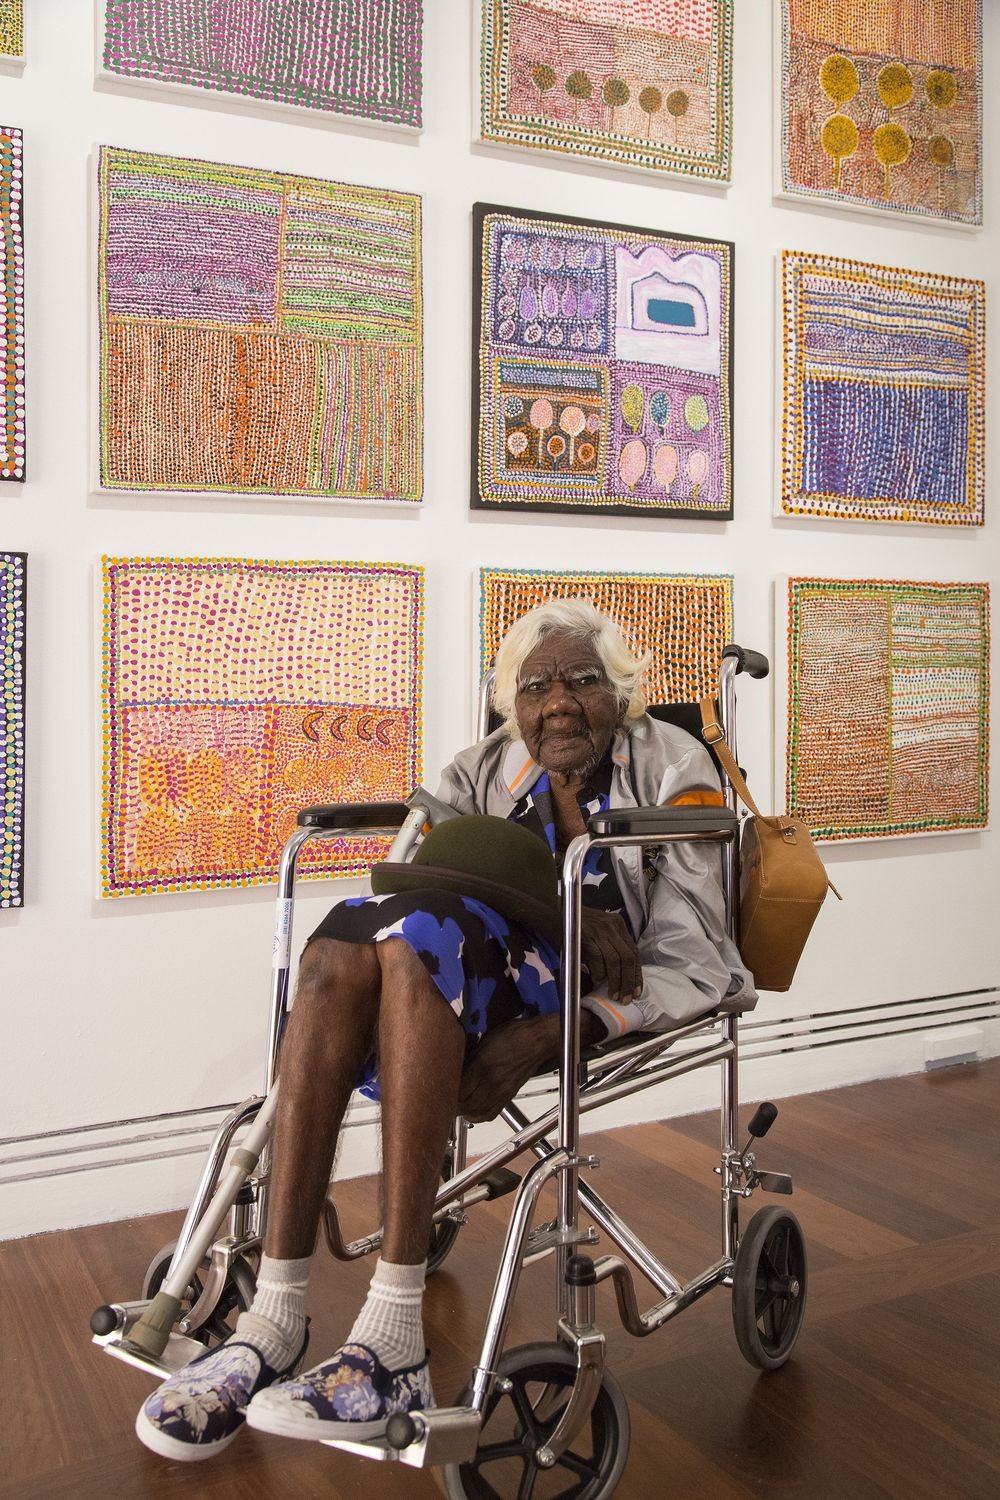 105-річна бабуся стала зіркою інтернету завдяки своїм картинам  - фото 1